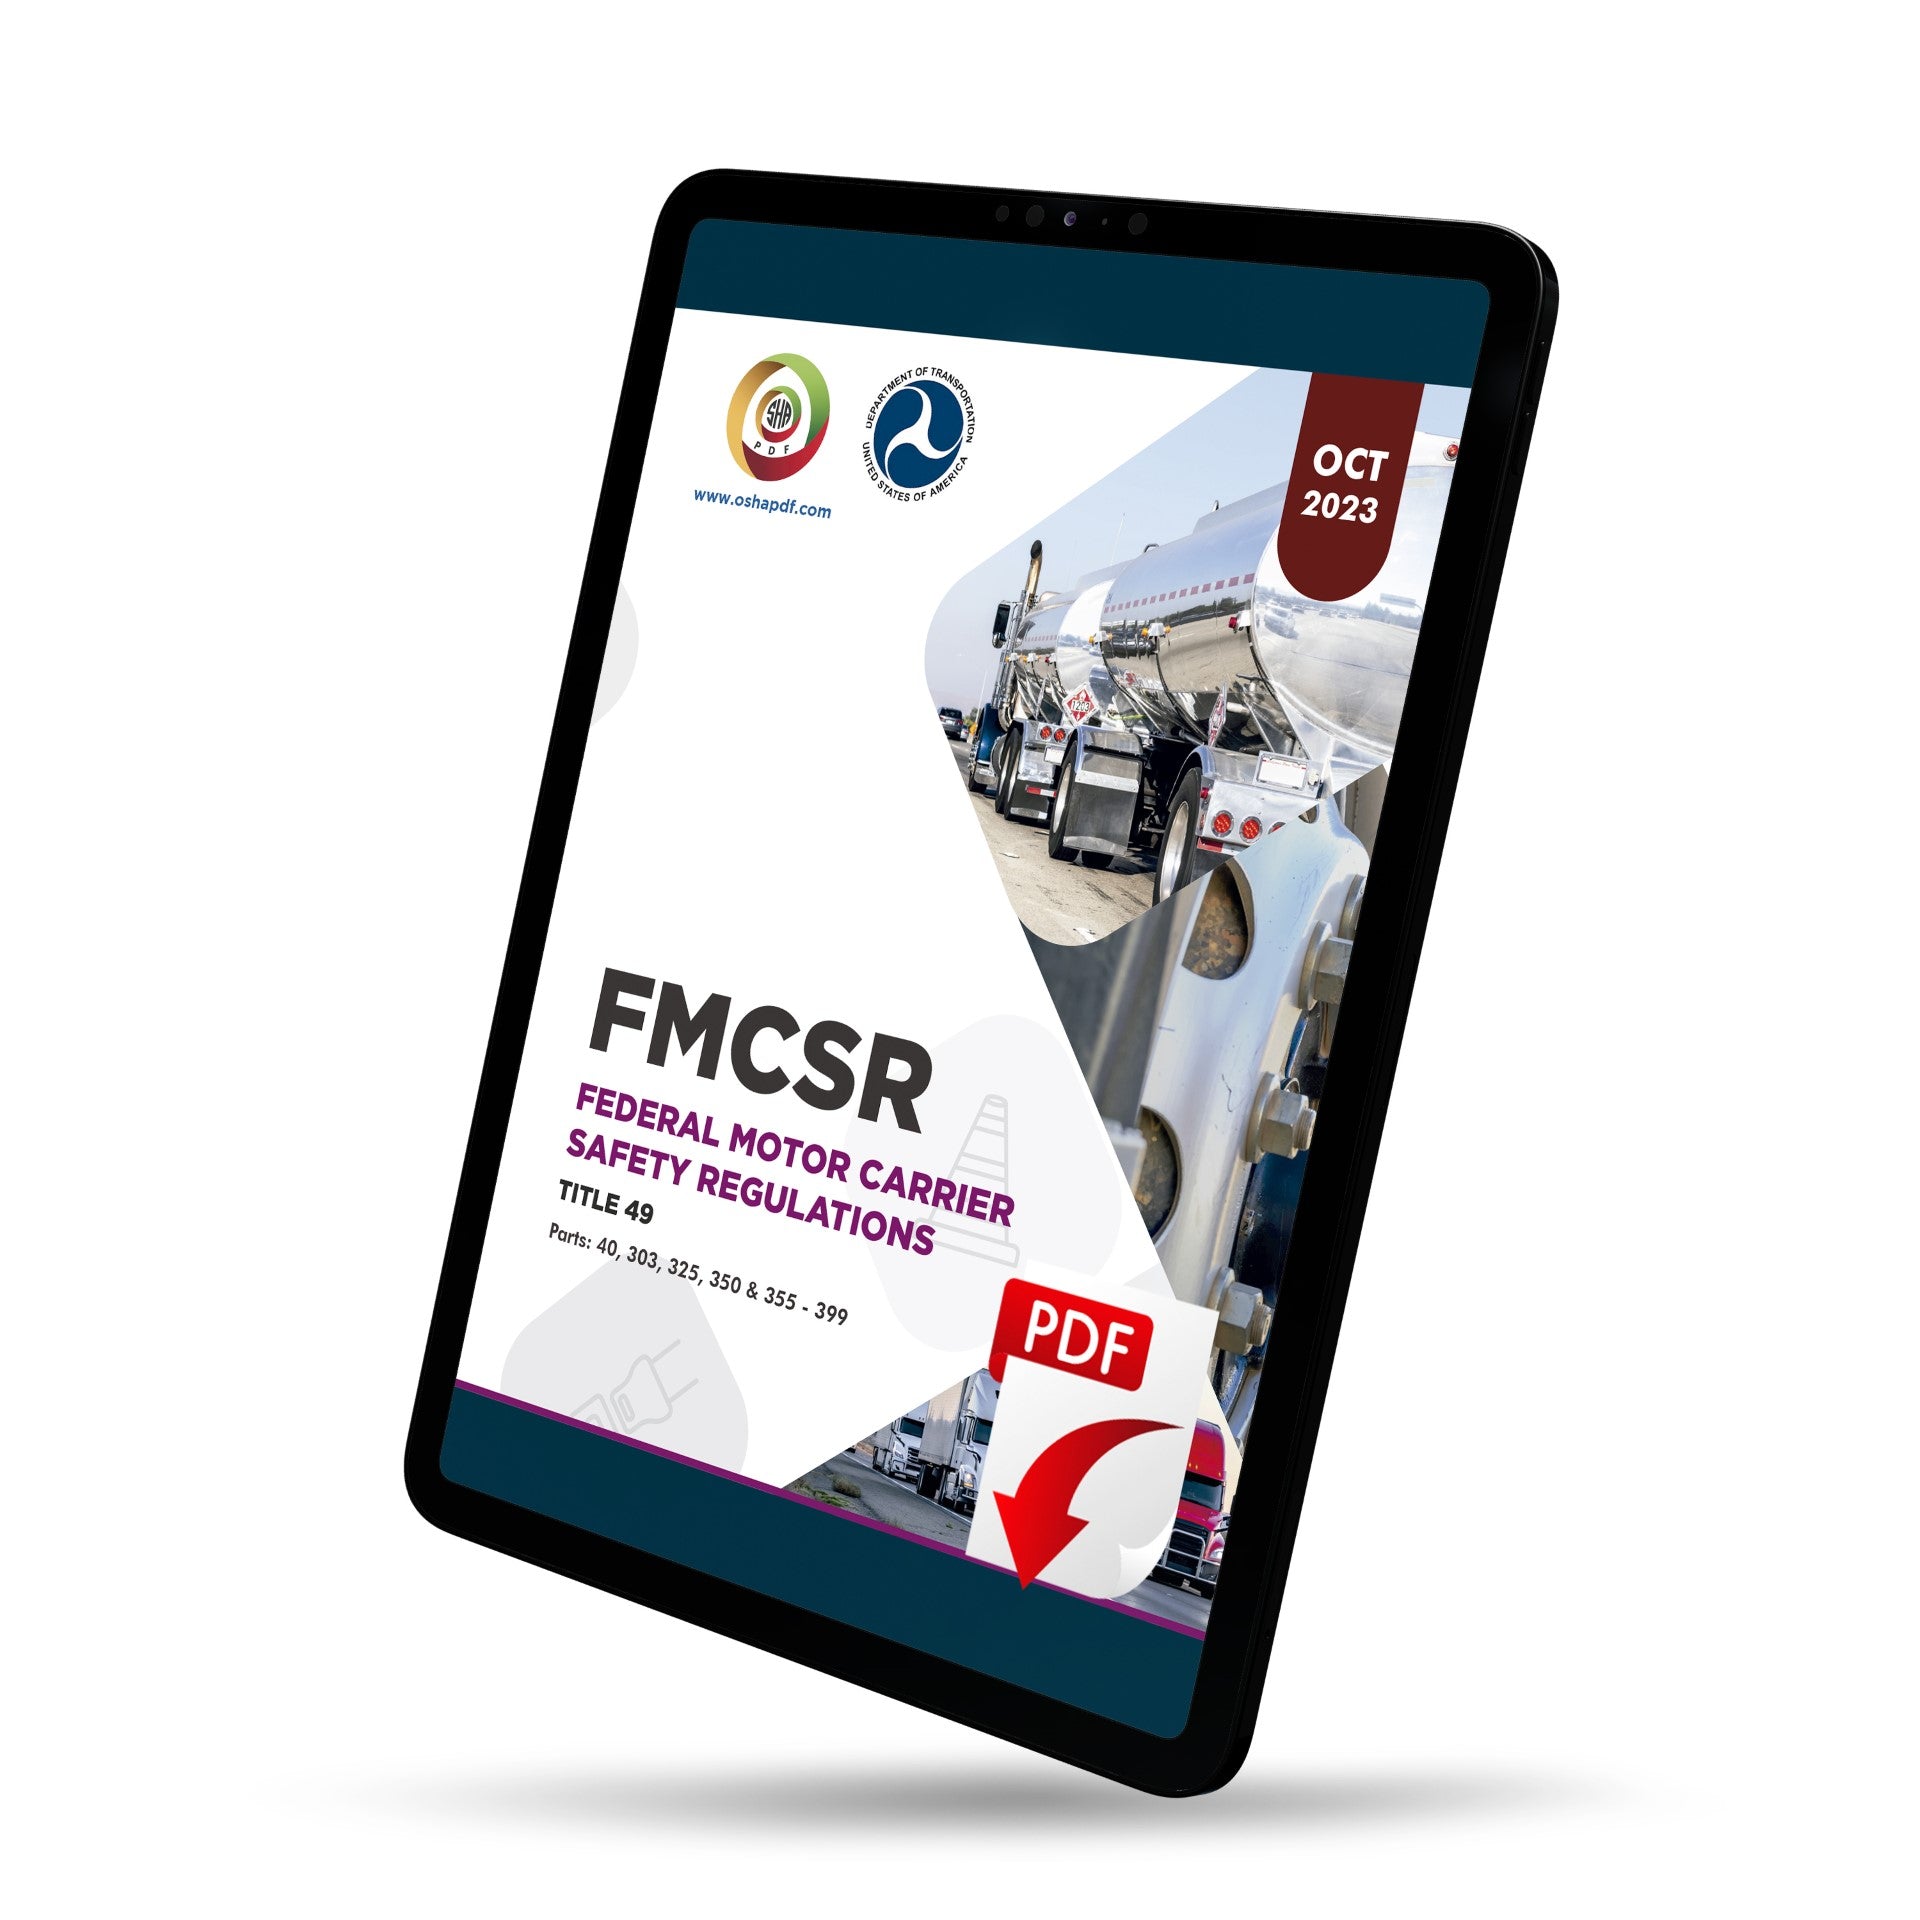 Federal Motor Carrier Safety Regulations (FMCSR) October 2023